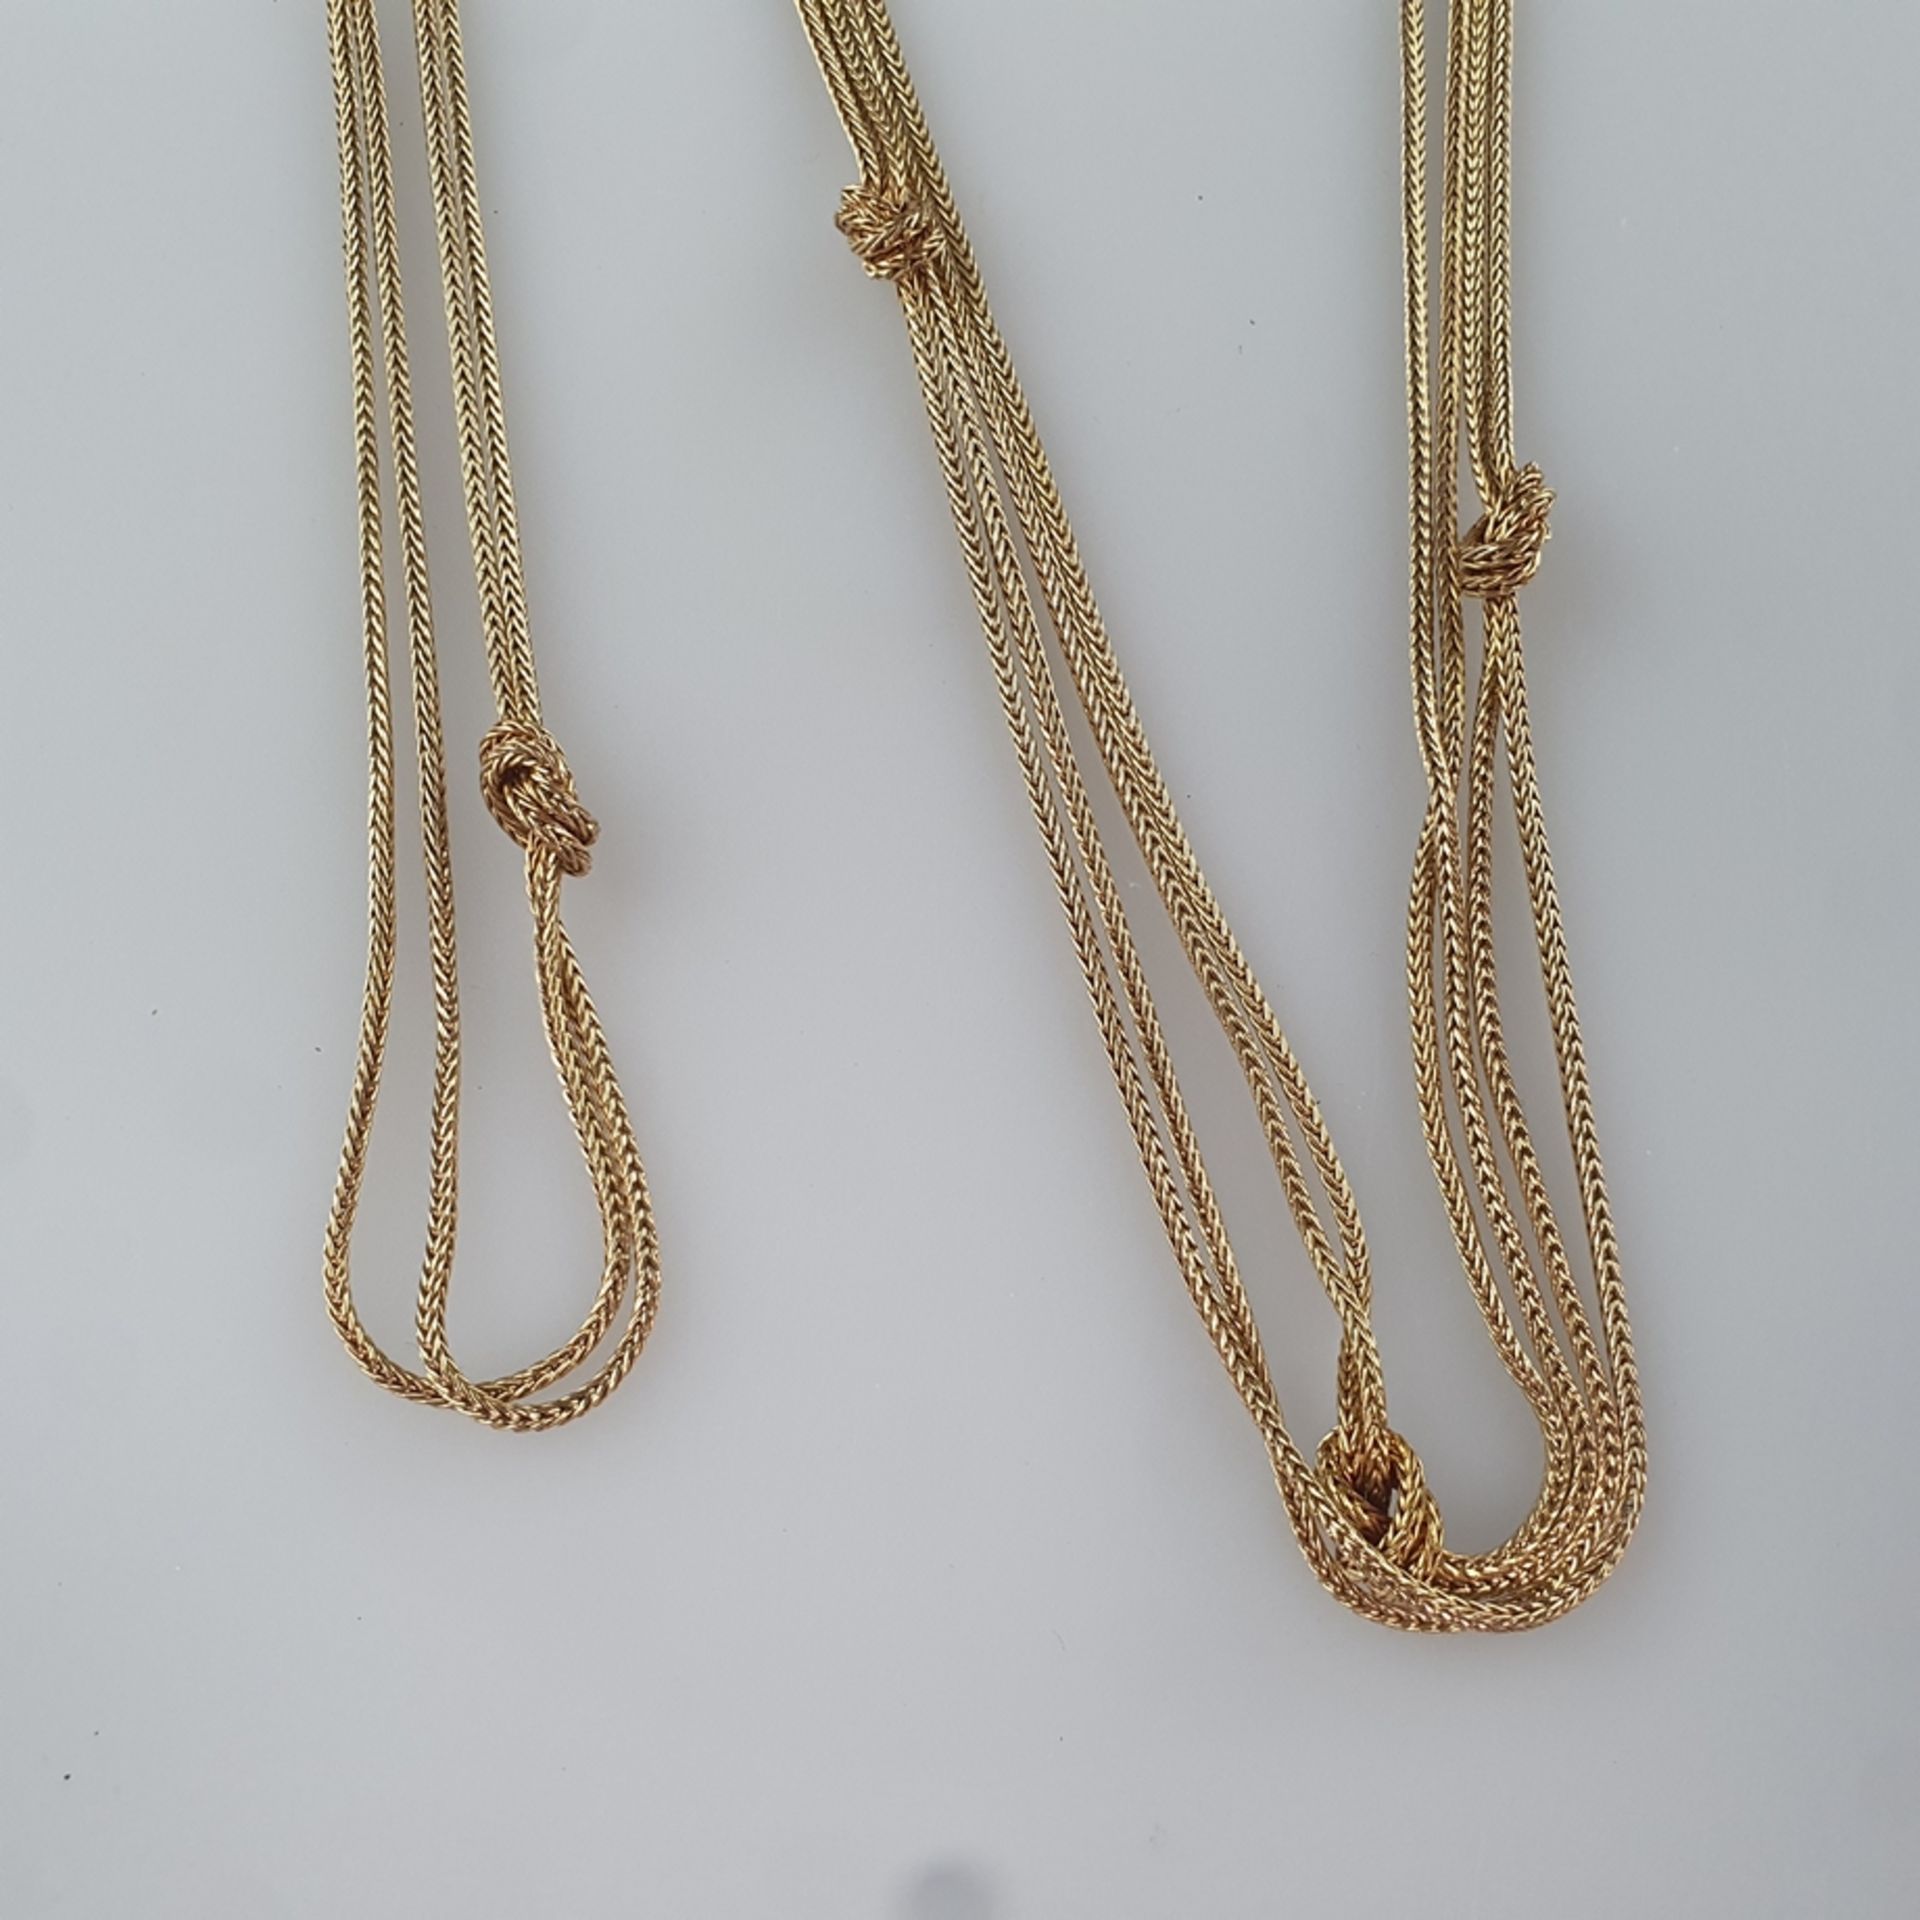 Vintage-Knotenkette in Überlänge - Henkel & Grosse (Pforzheim), goldfarbenes Metall, Doppelkette mi - Bild 4 aus 5